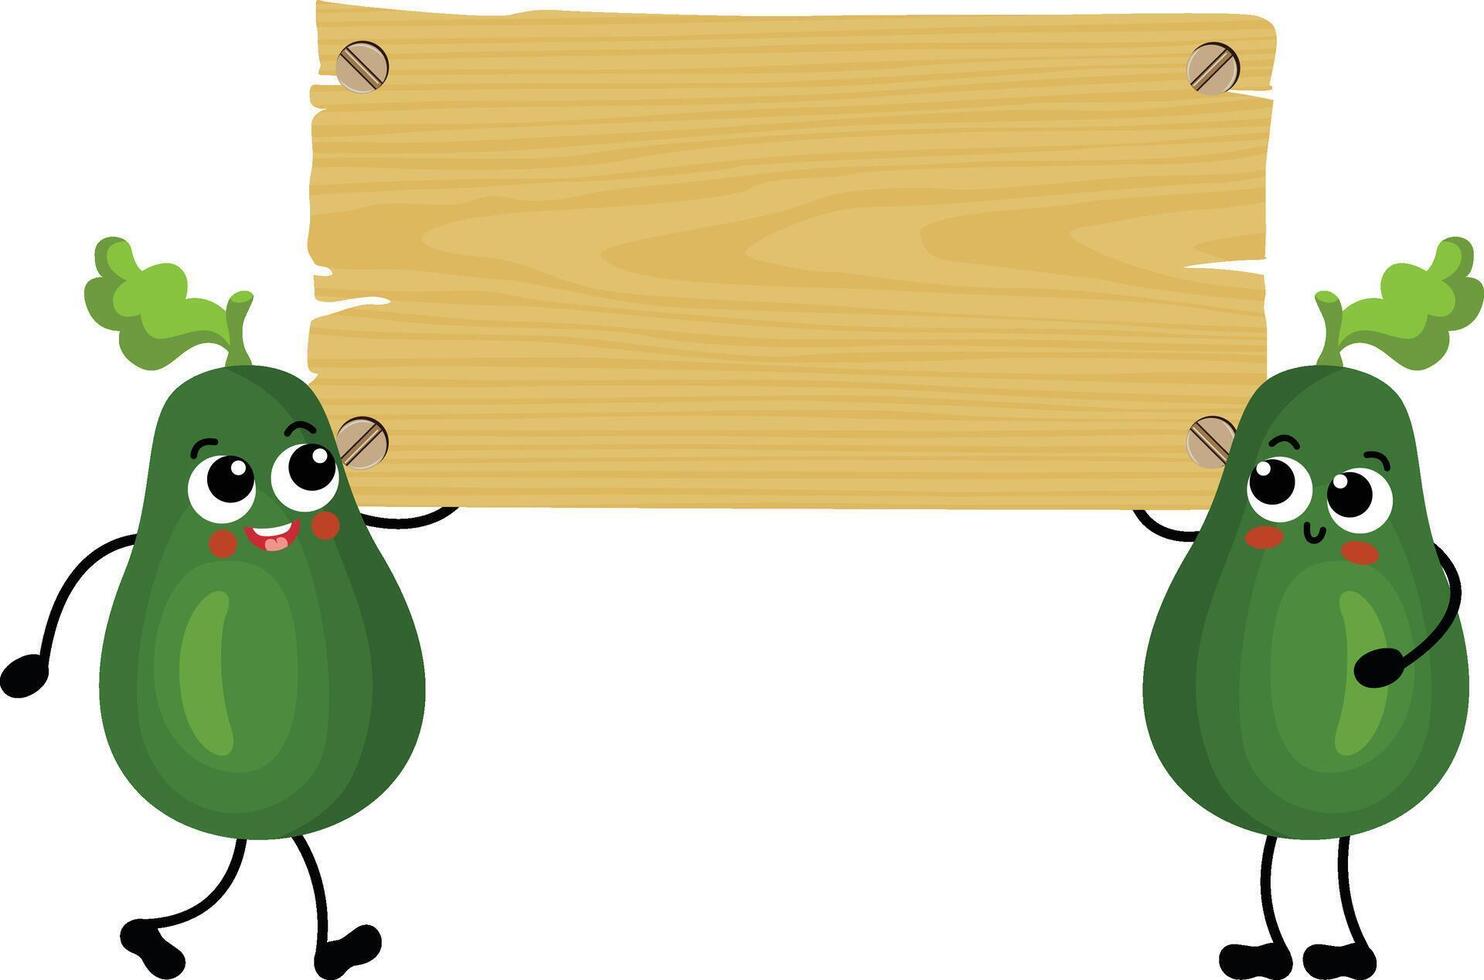 zwei komisch Grün Avocados halten ein leeren hölzern Tafel vektor